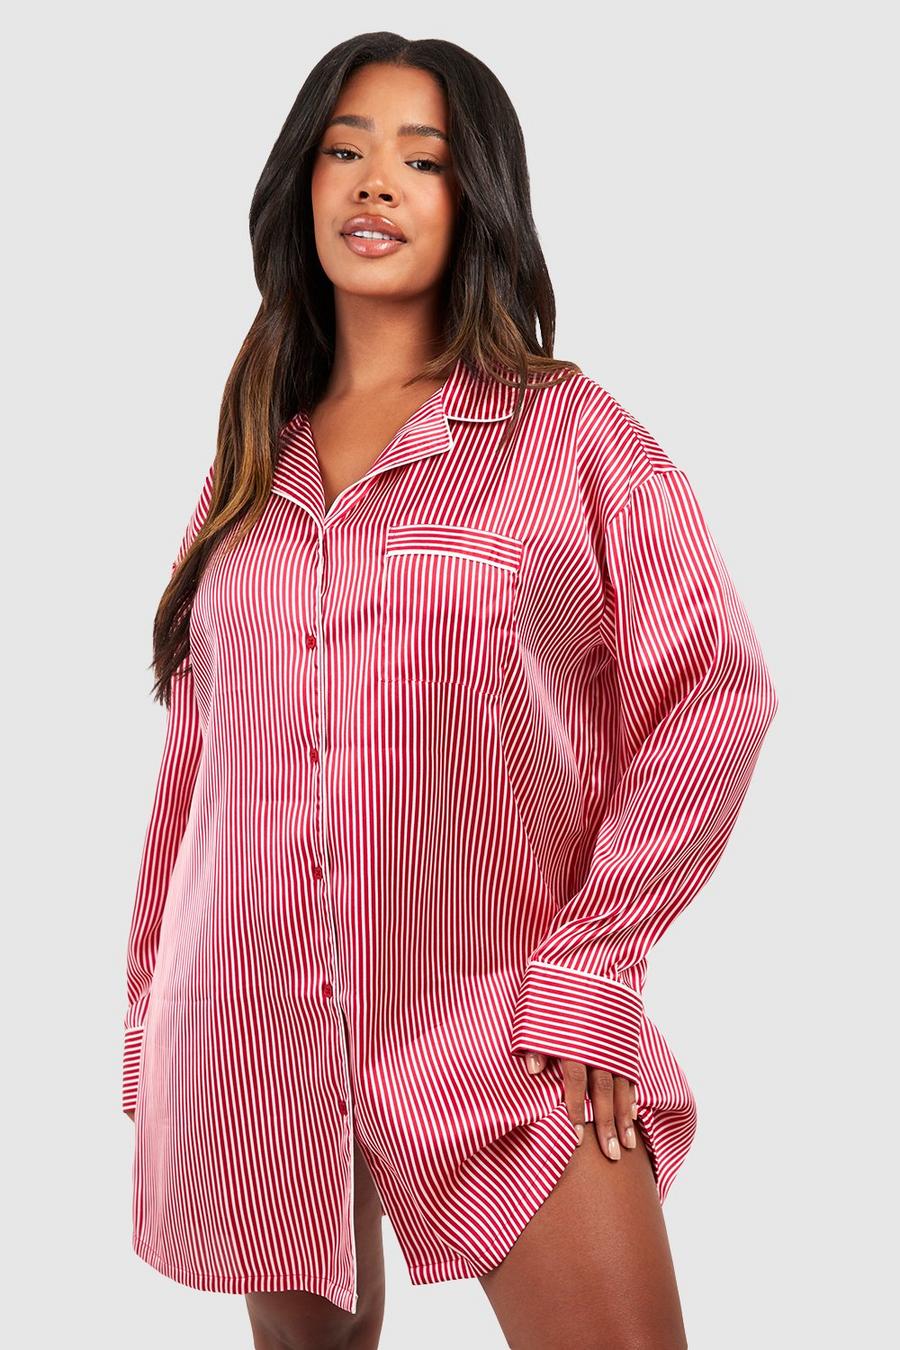 Plus Size Baggy Women's Classic Striped Pajama Set Sleepwear Loungewear  Autumn Winter 4/3 Sleeve Striped Sleepwear Pjs Sets Size S-5XL 